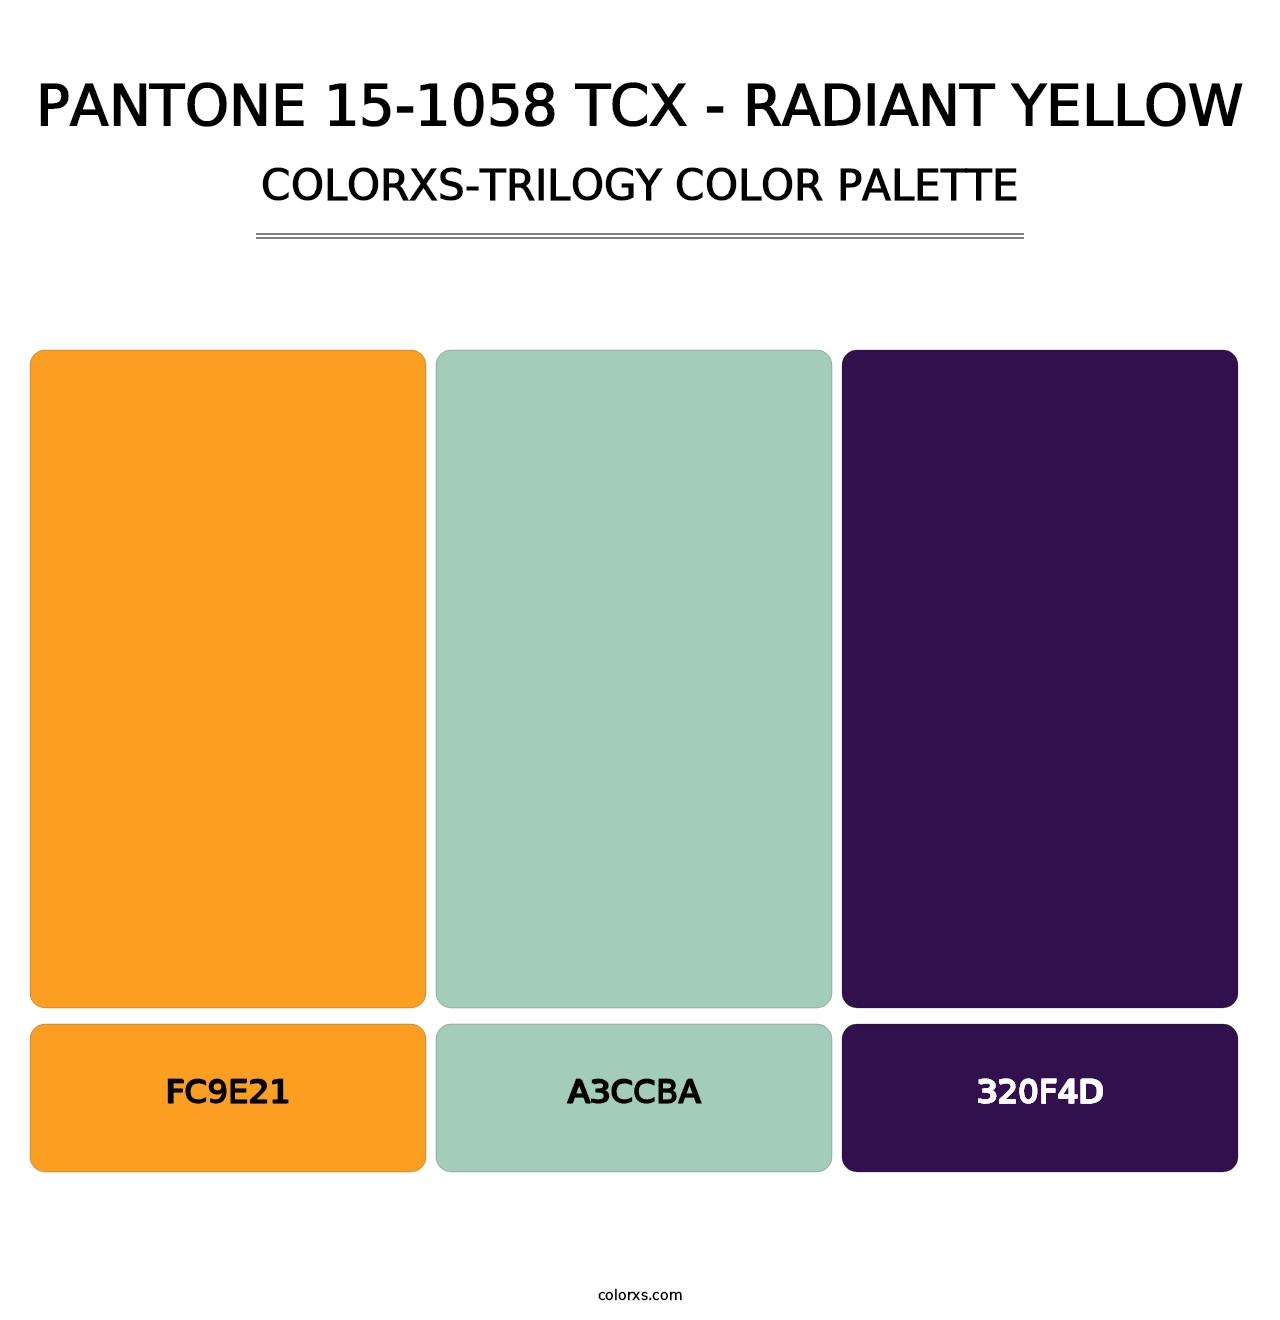 PANTONE 15-1058 TCX - Radiant Yellow - Colorxs Trilogy Palette